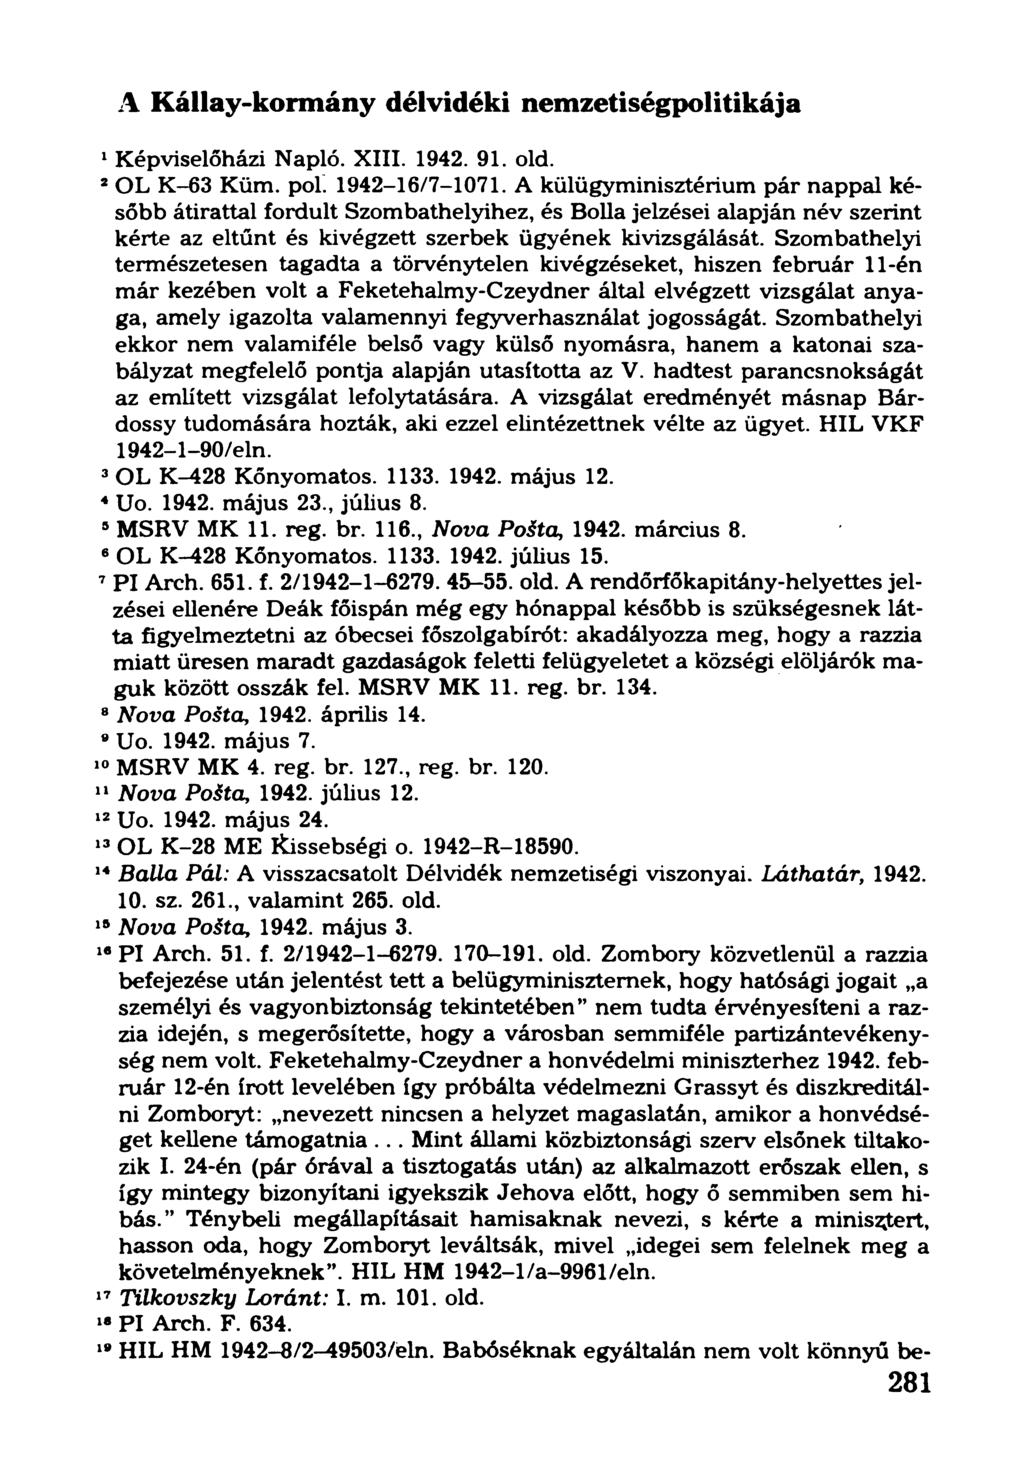 A Kállay-kormány délvidéki nemzetiségpolitikája 1Képviselőházi Napló. XIII. 1942. 91. old. 2OL K-63 Küm. pol. 1942-16/7-1071.